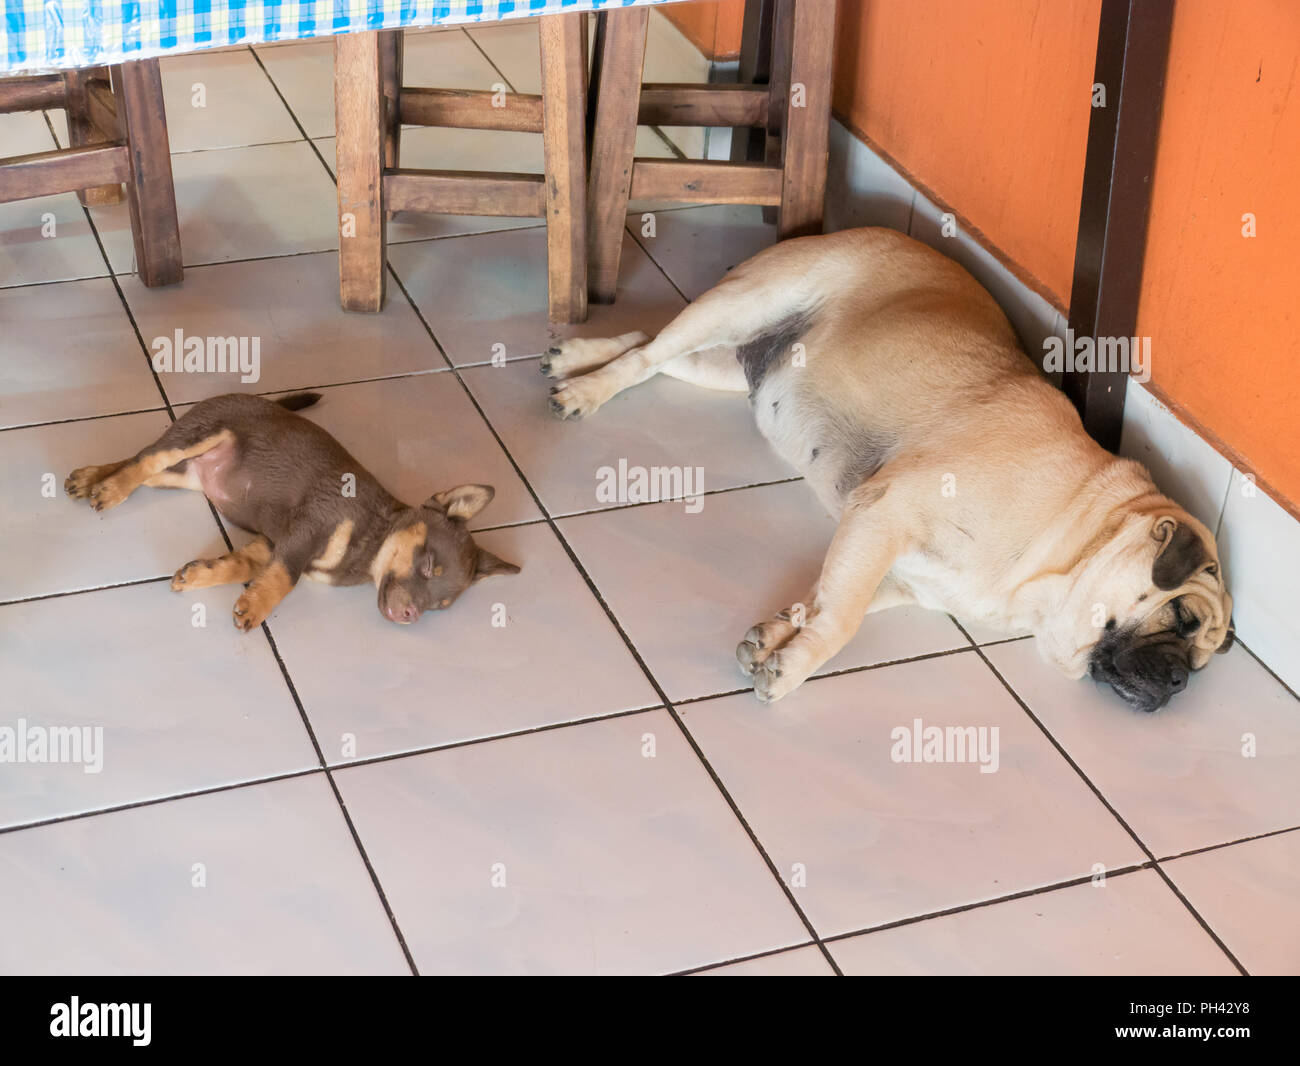 Dog and small dog sleeping on white tile background, Stock Photo